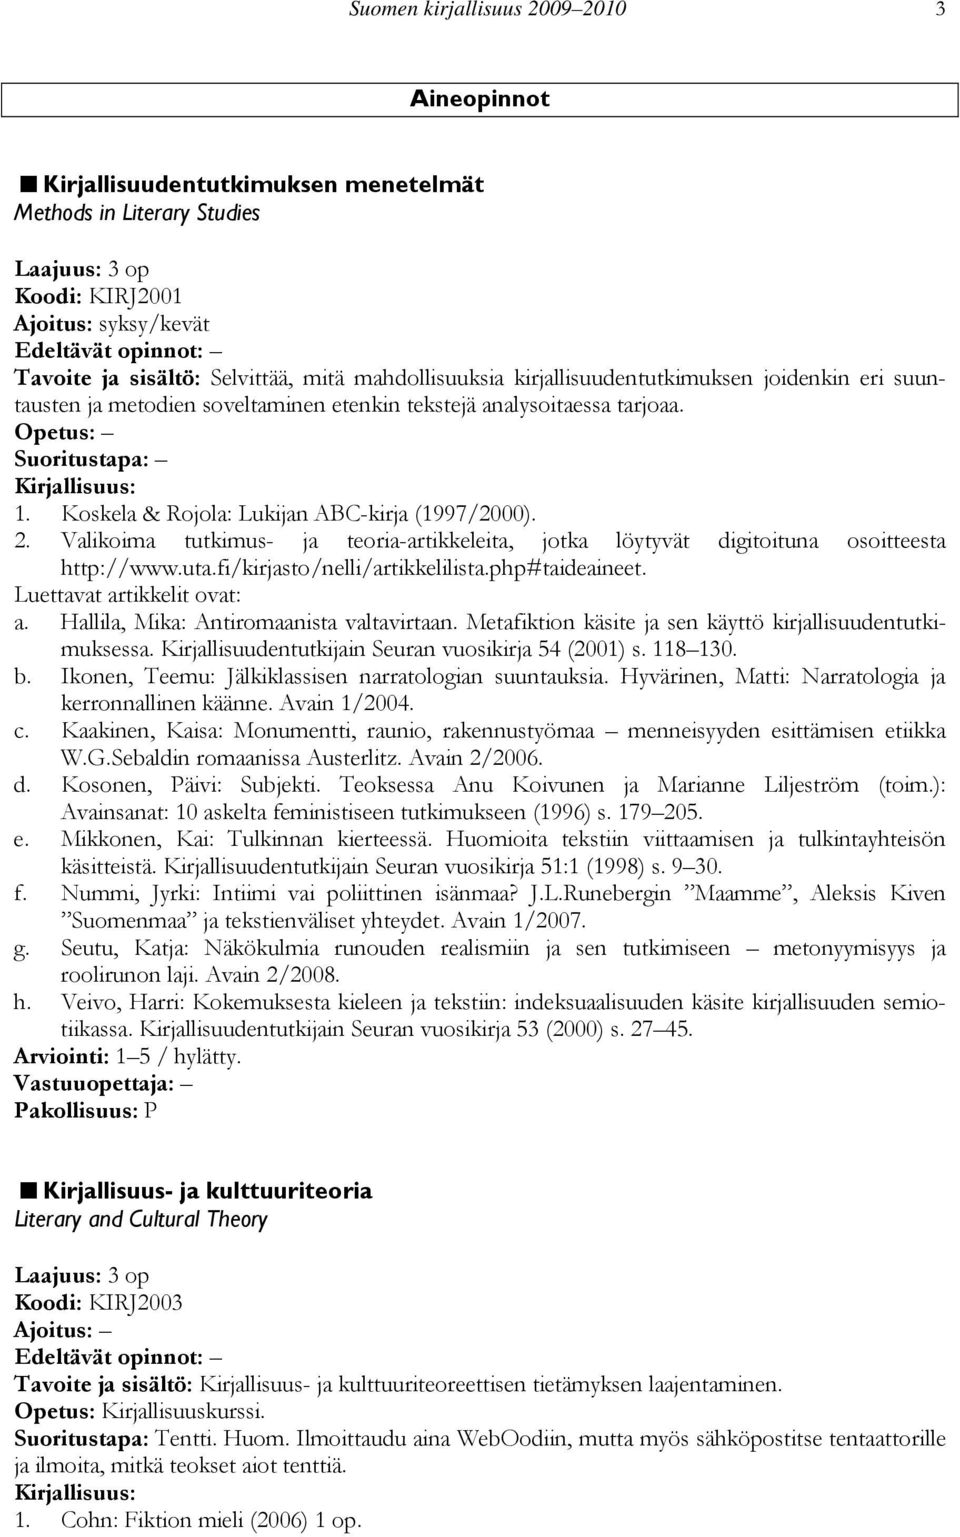 Koskela & Rojola: Lukijan ABC-kirja (1997/2000). 2. Valikoima tutkimus- ja teoria-artikkeleita, jotka löytyvät digitoituna osoitteesta http://www.uta.fi/kirjasto/nelli/artikkelilista.php#taideaineet.